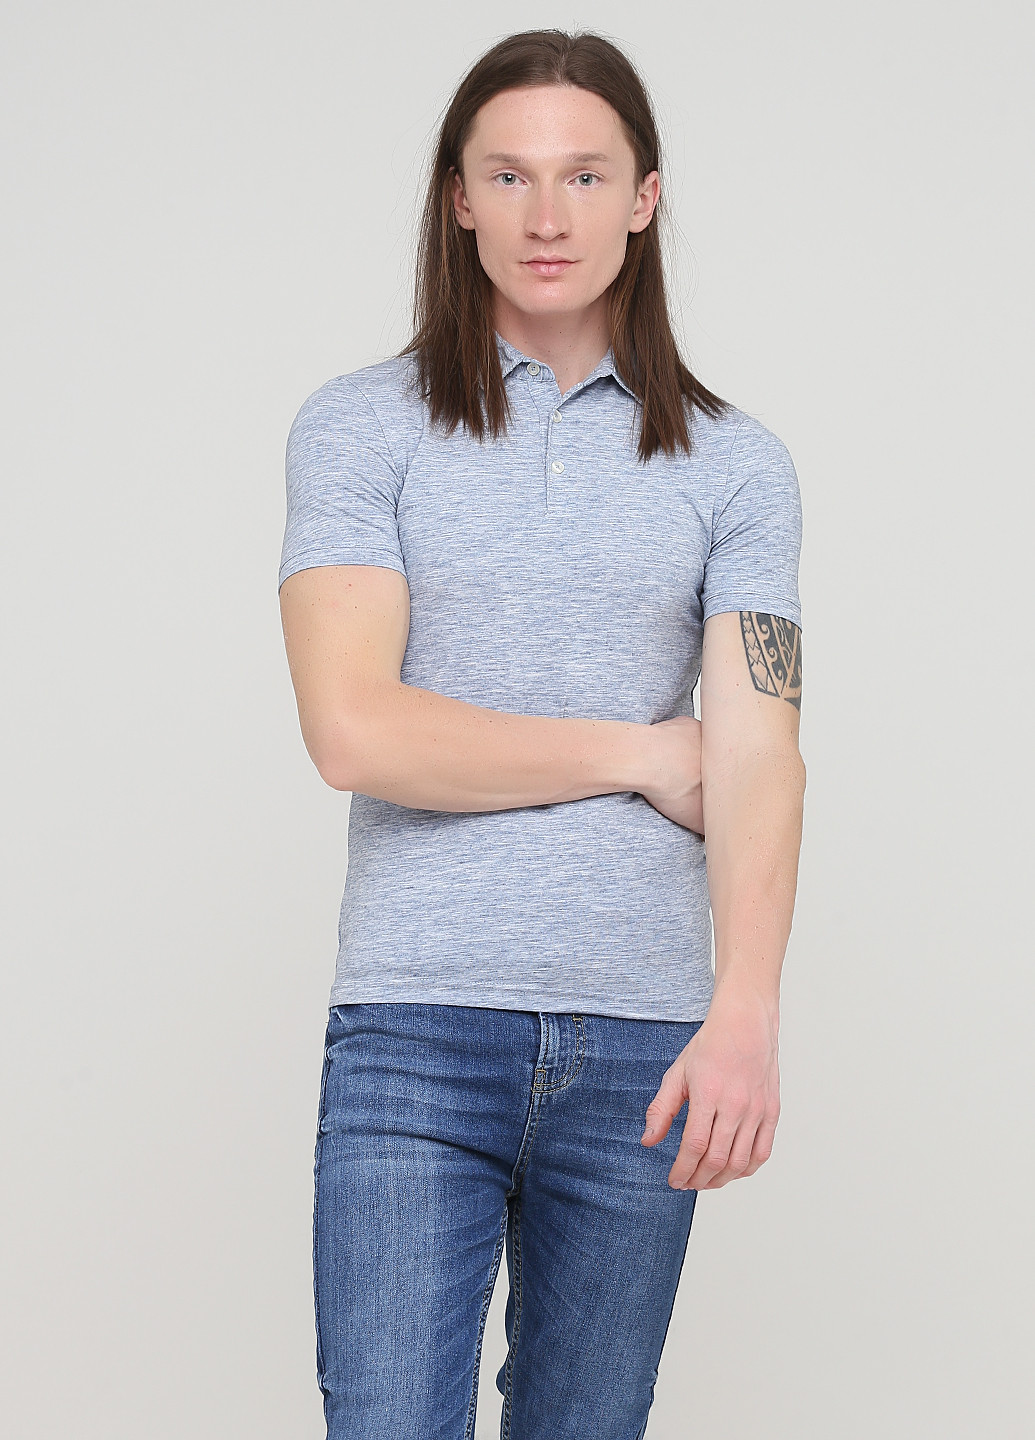 Голубой футболка-футболка для мужчин H&M меланжевая